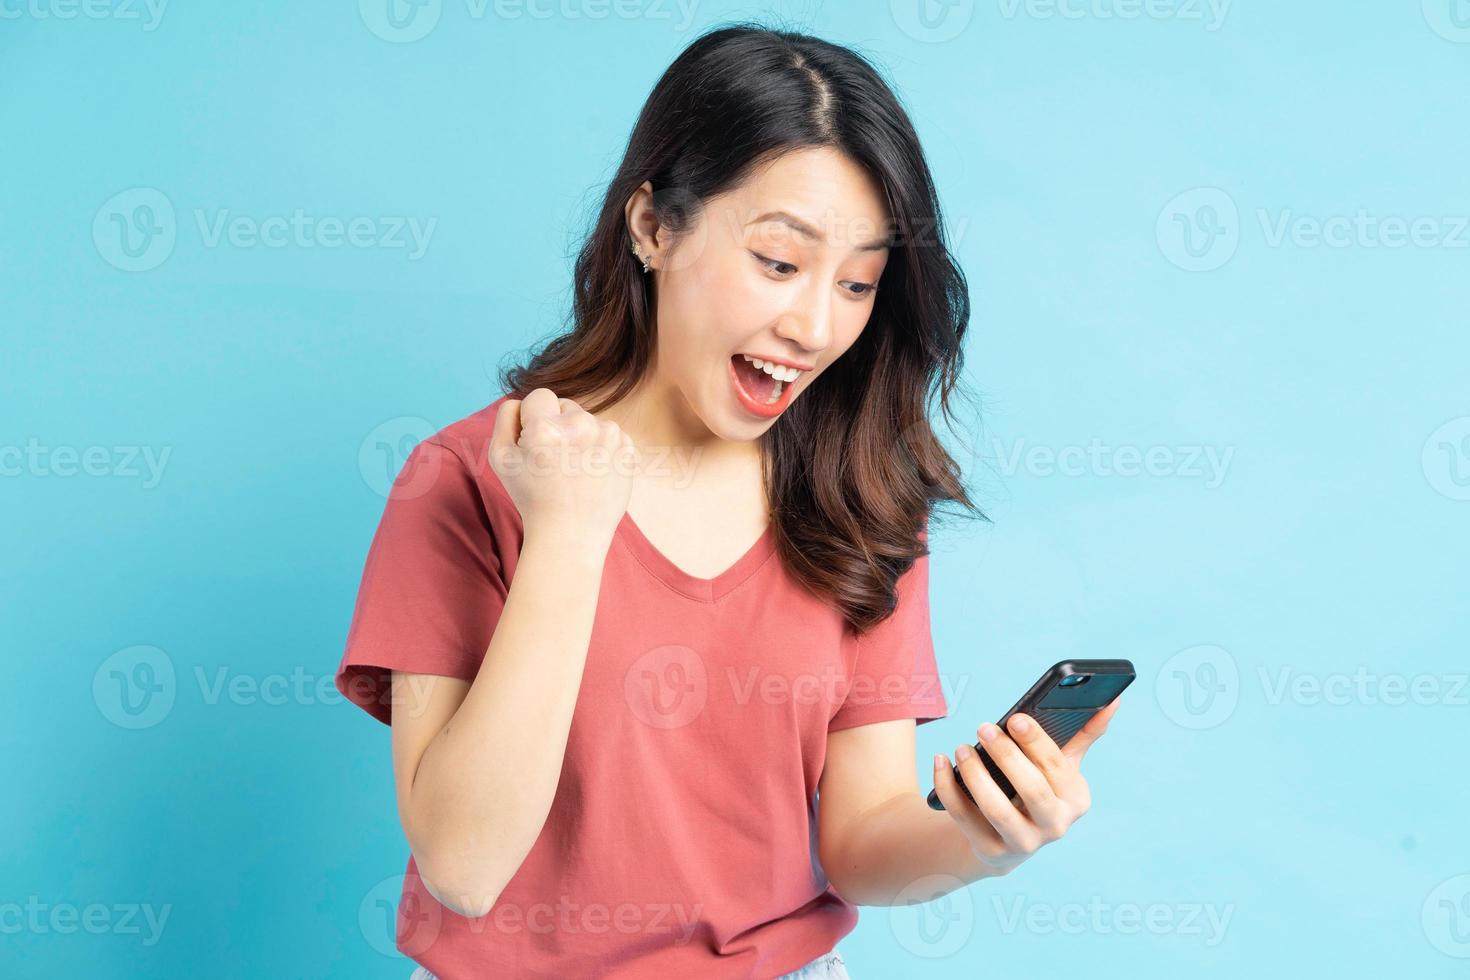 den vackra asiatiska kvinnan tittar på sin telefon och visar ett triumferande uttryck foto